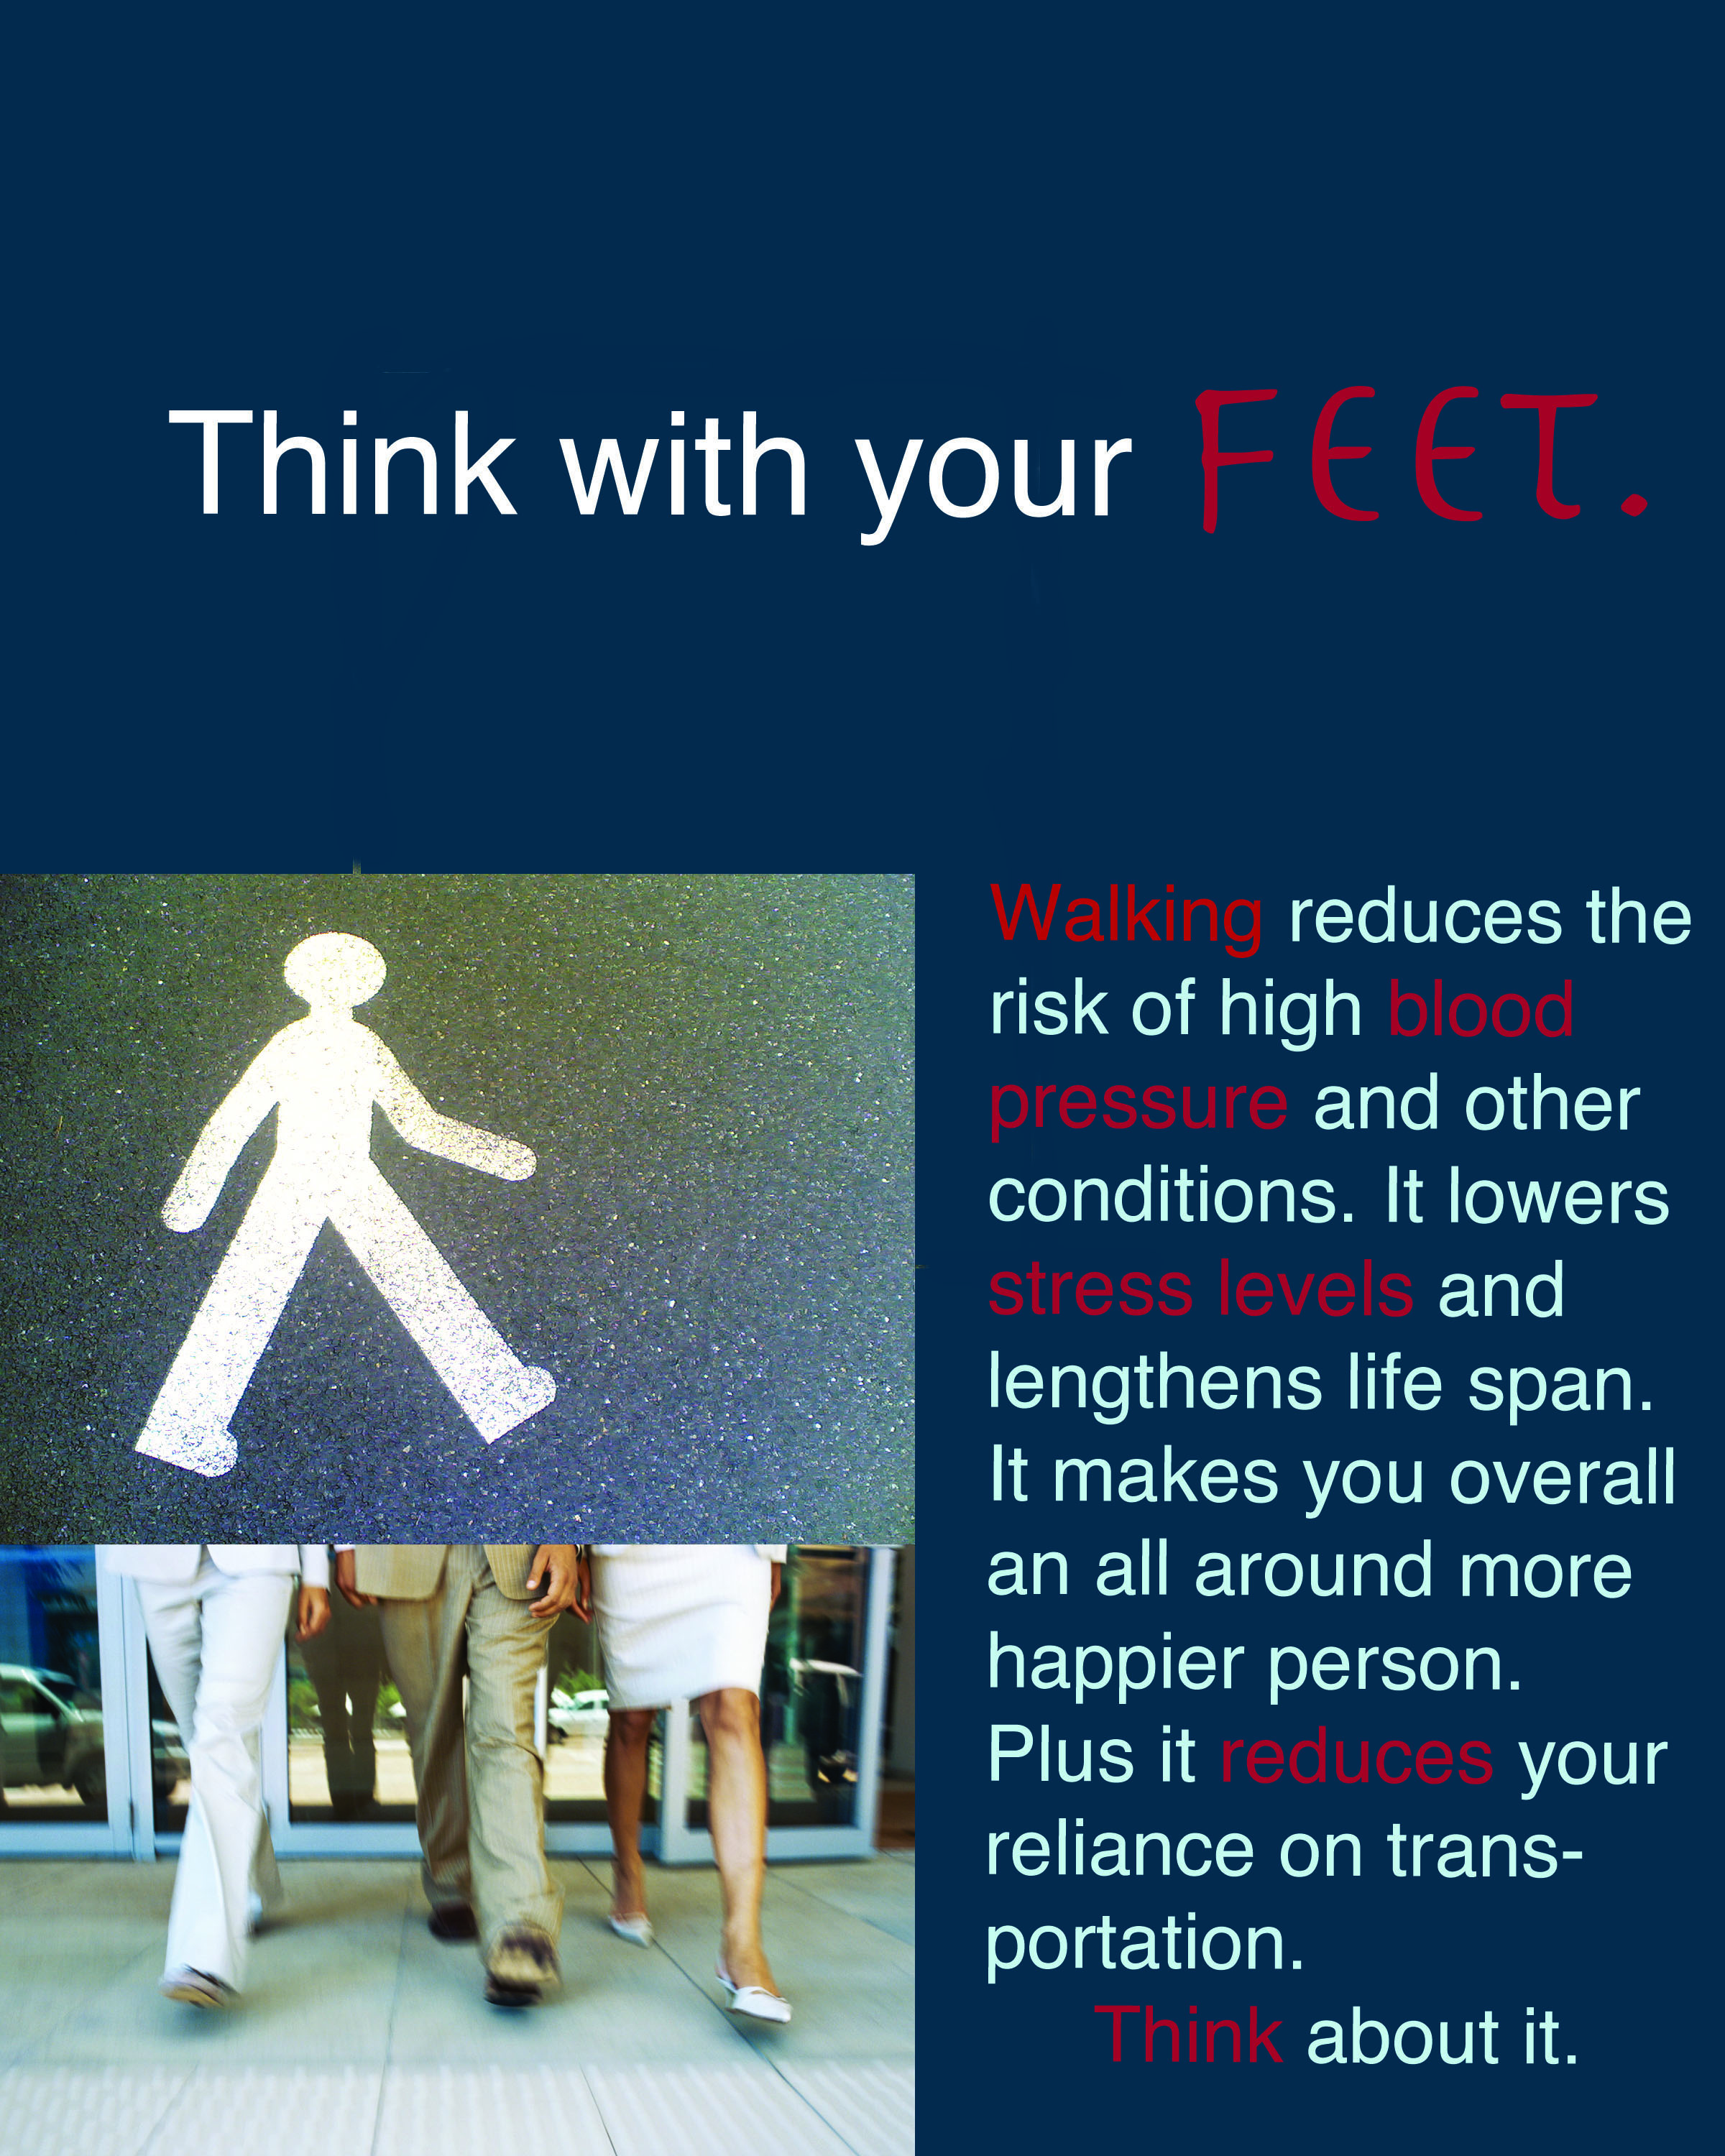 encourage walking